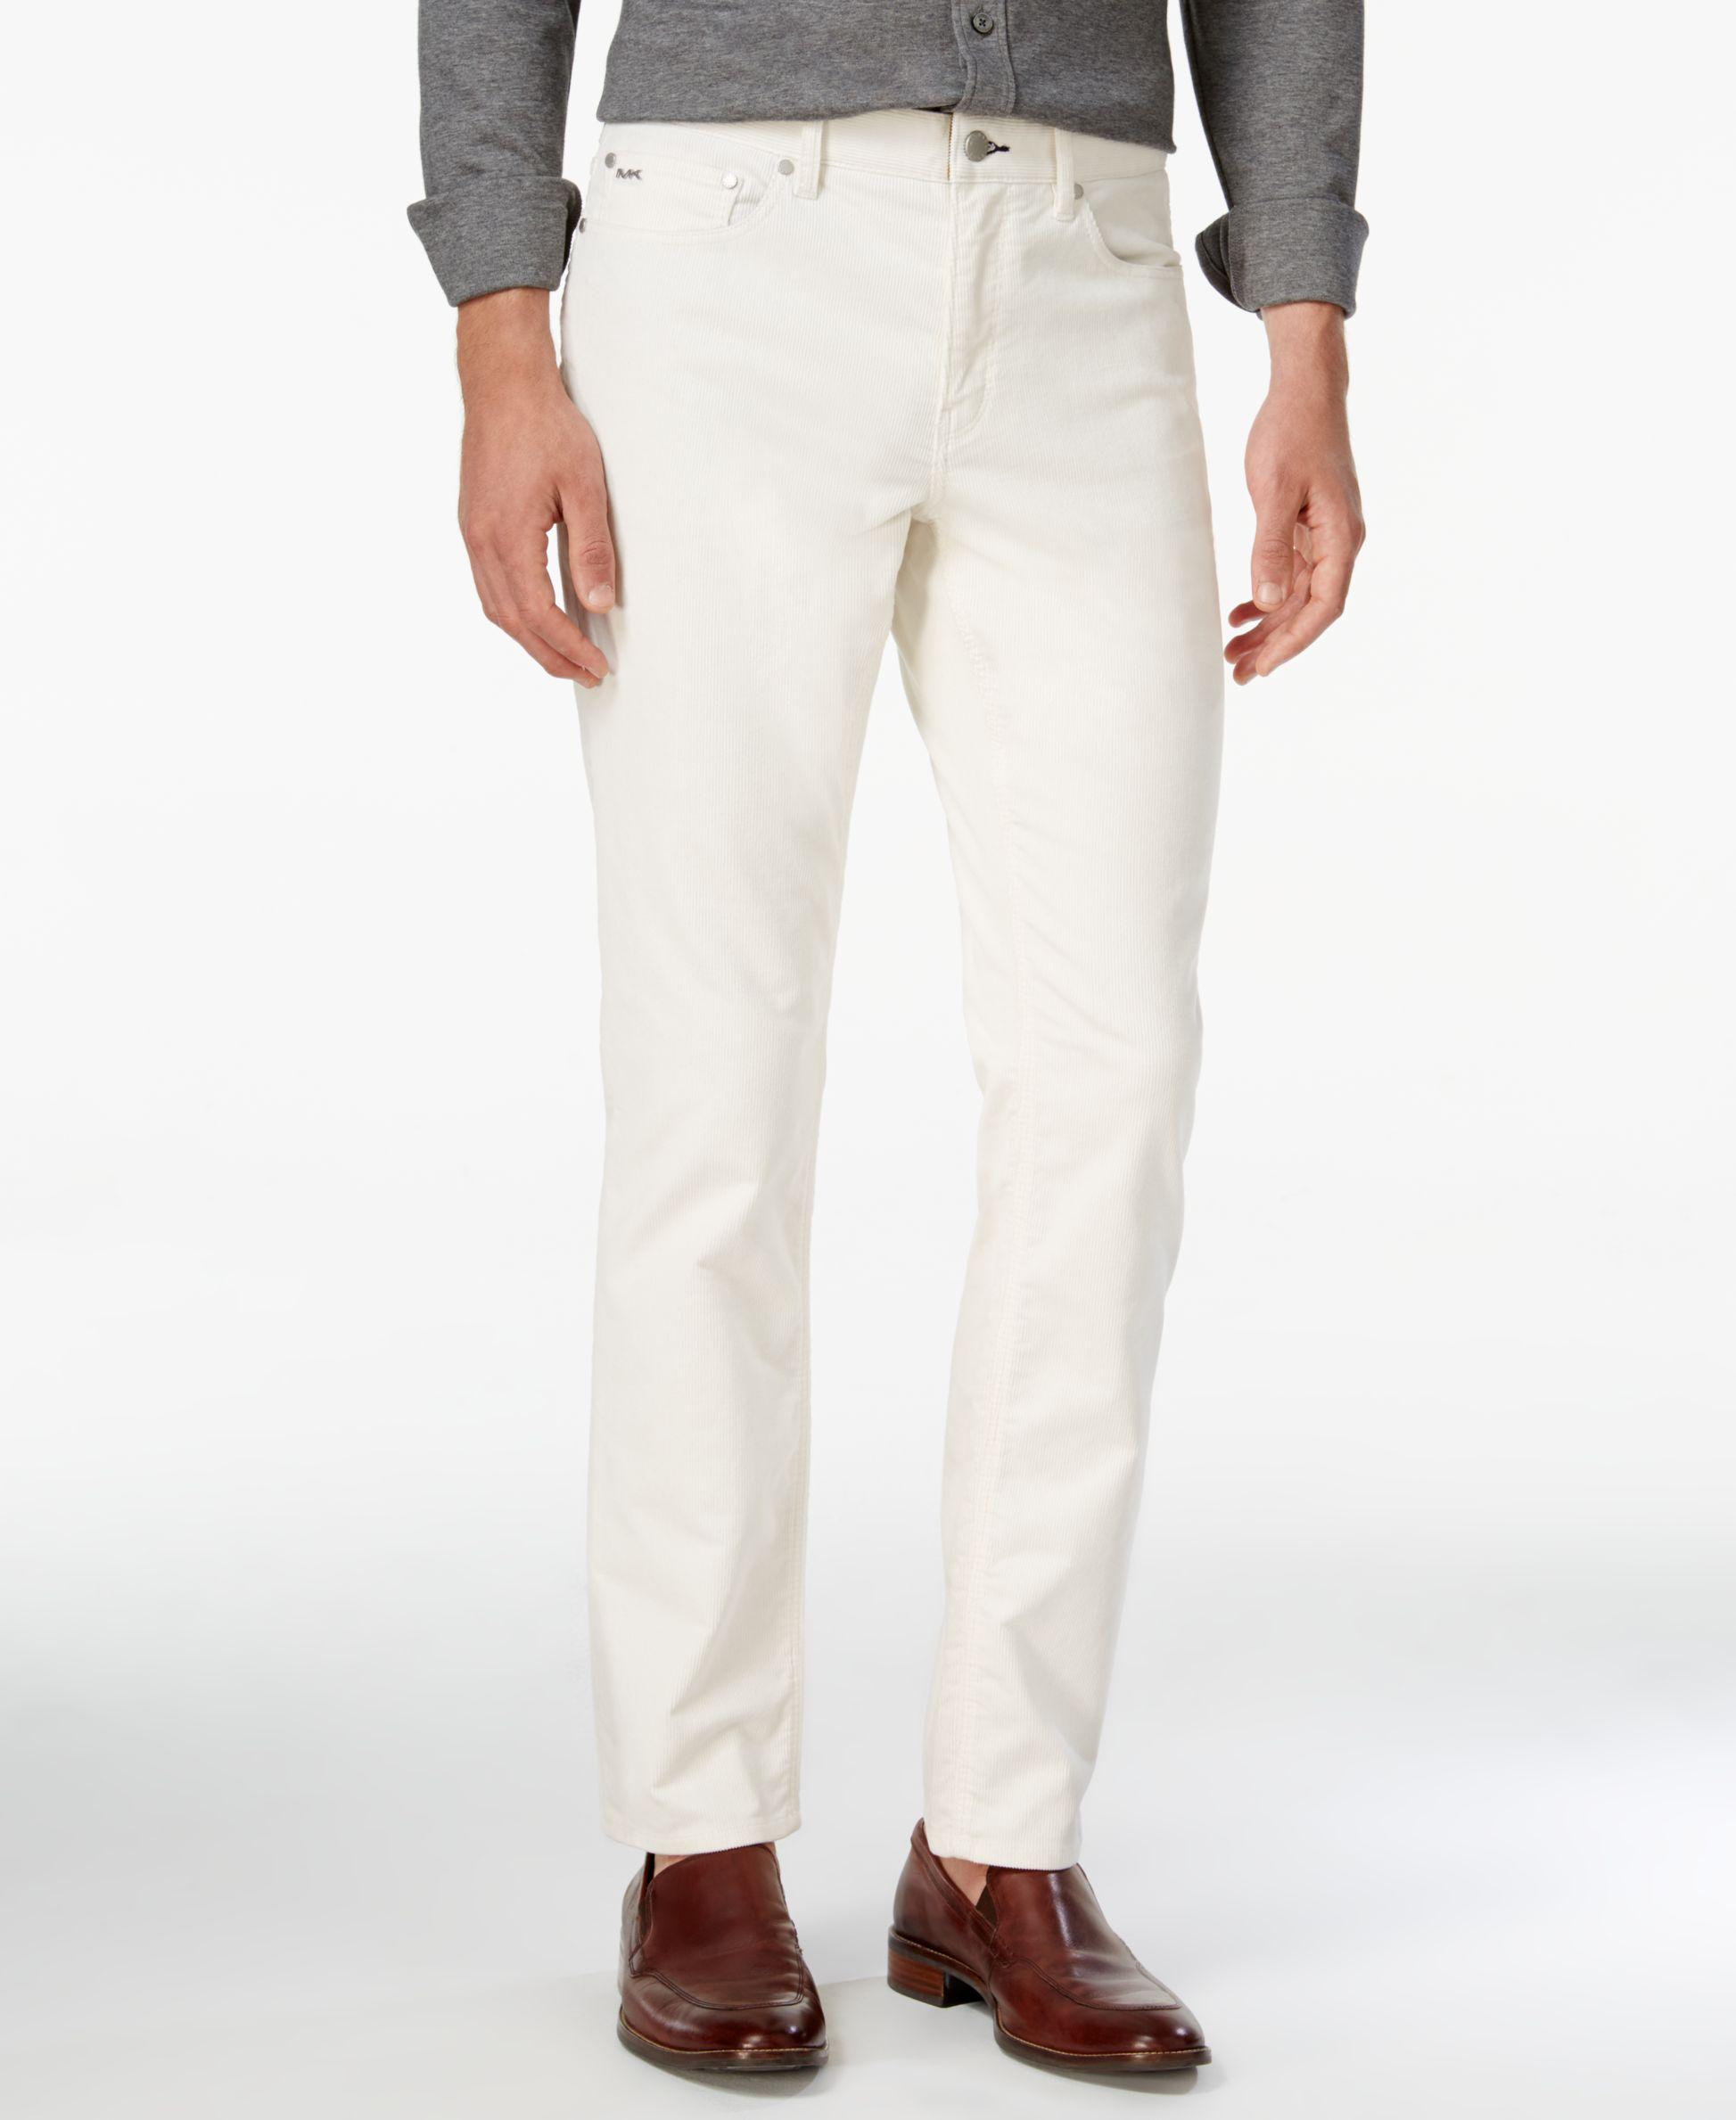 Michael Kors Men's Carlson Corduroy Pants in Ivory (White) for Men - Lyst